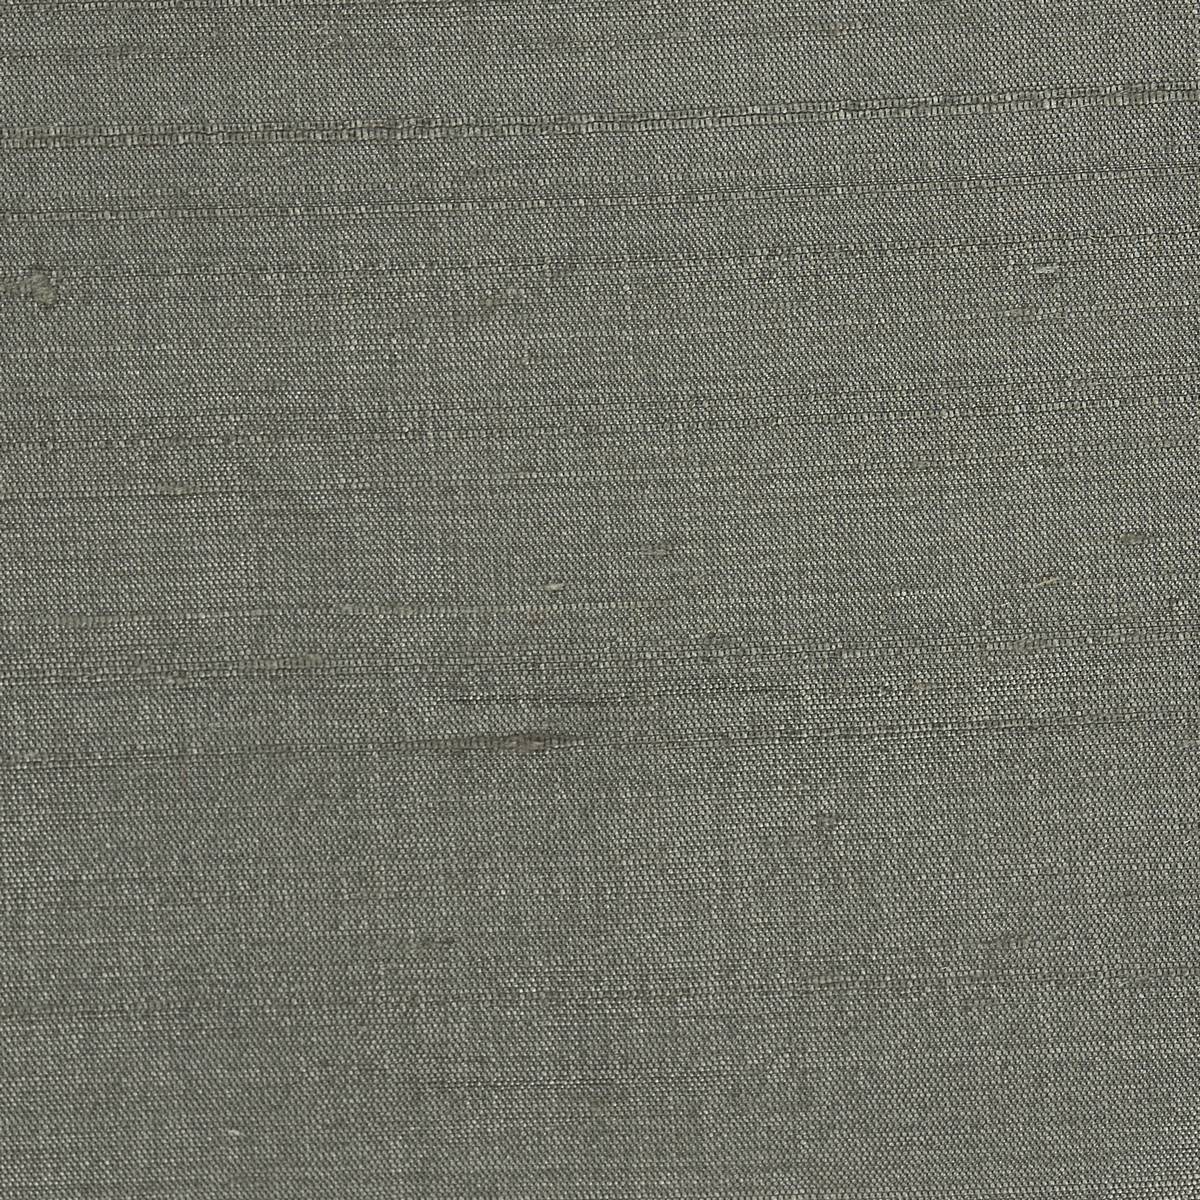 Laminar Anchor Grey Fabric by Harlequin